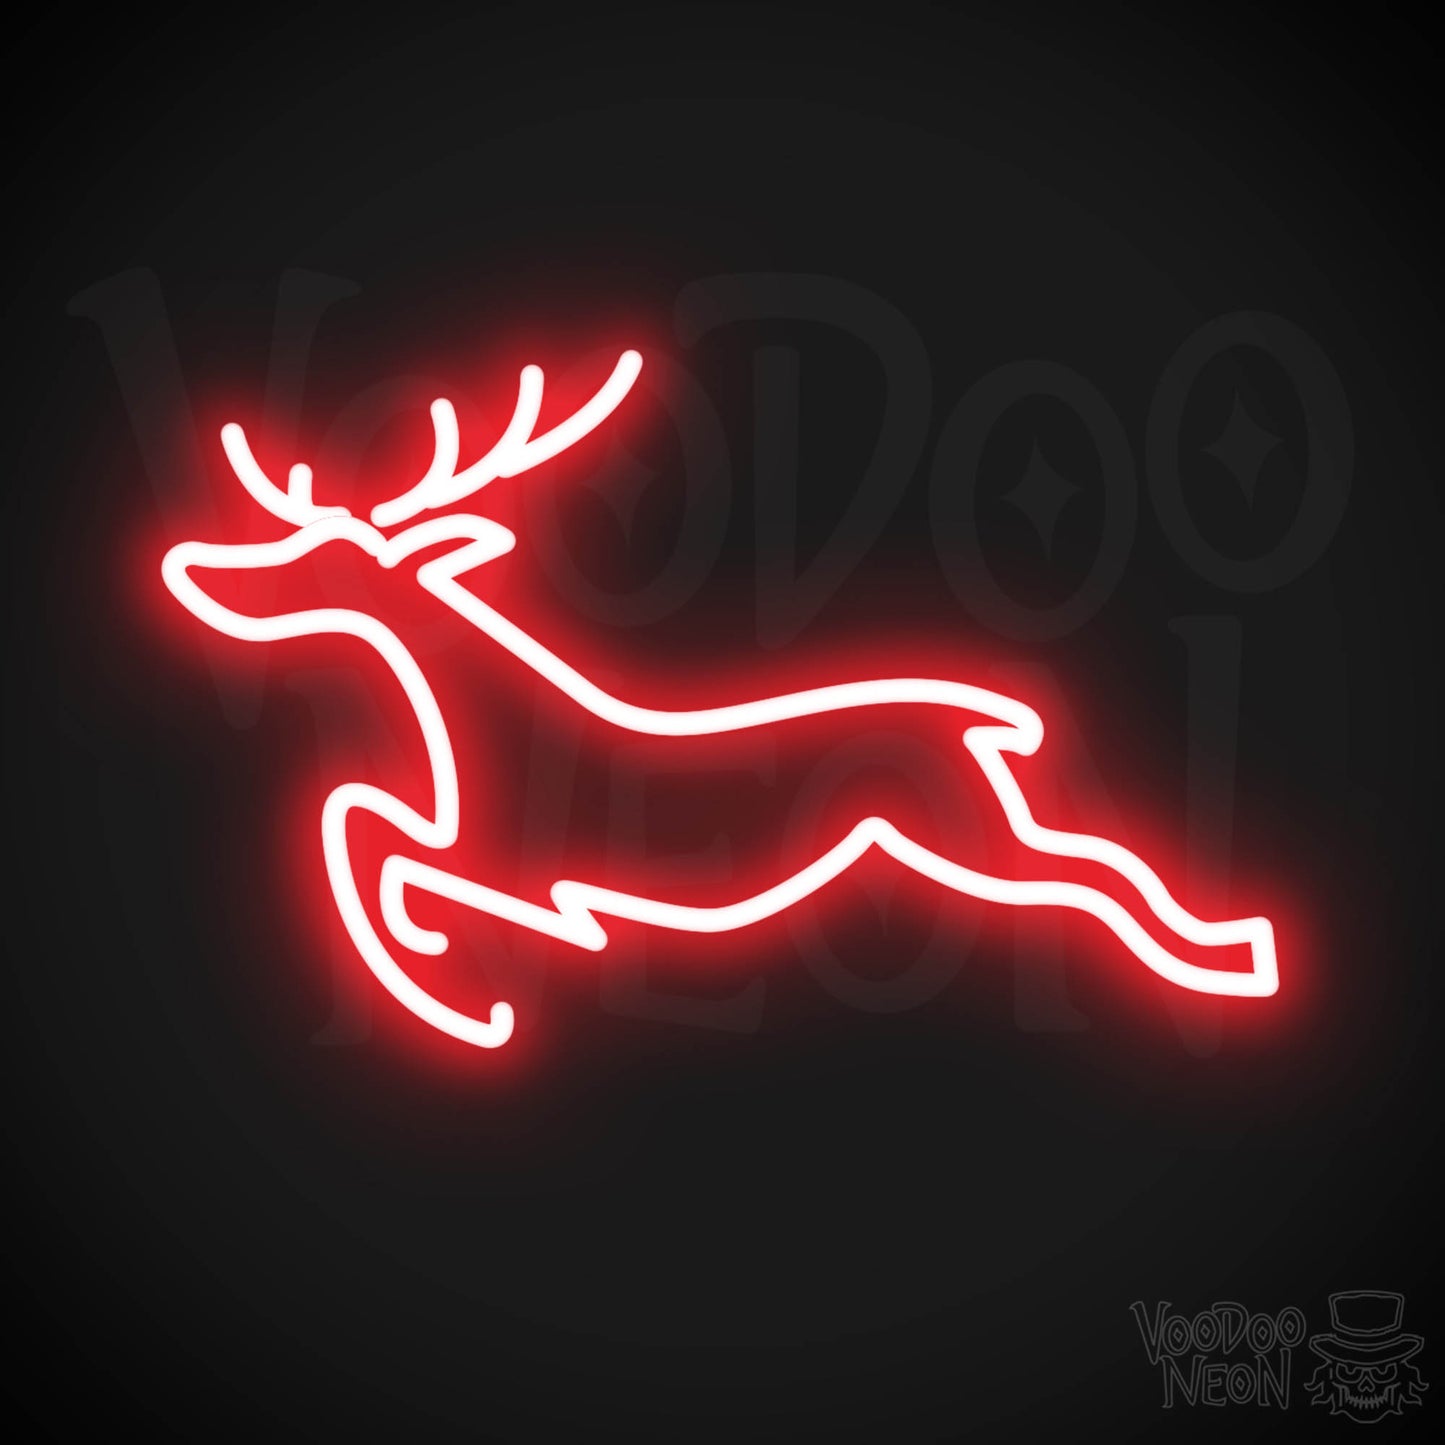 Reindeer Neon Sign - Neon Reindeer Wall Art - Christmas Neon Sign - Color Red